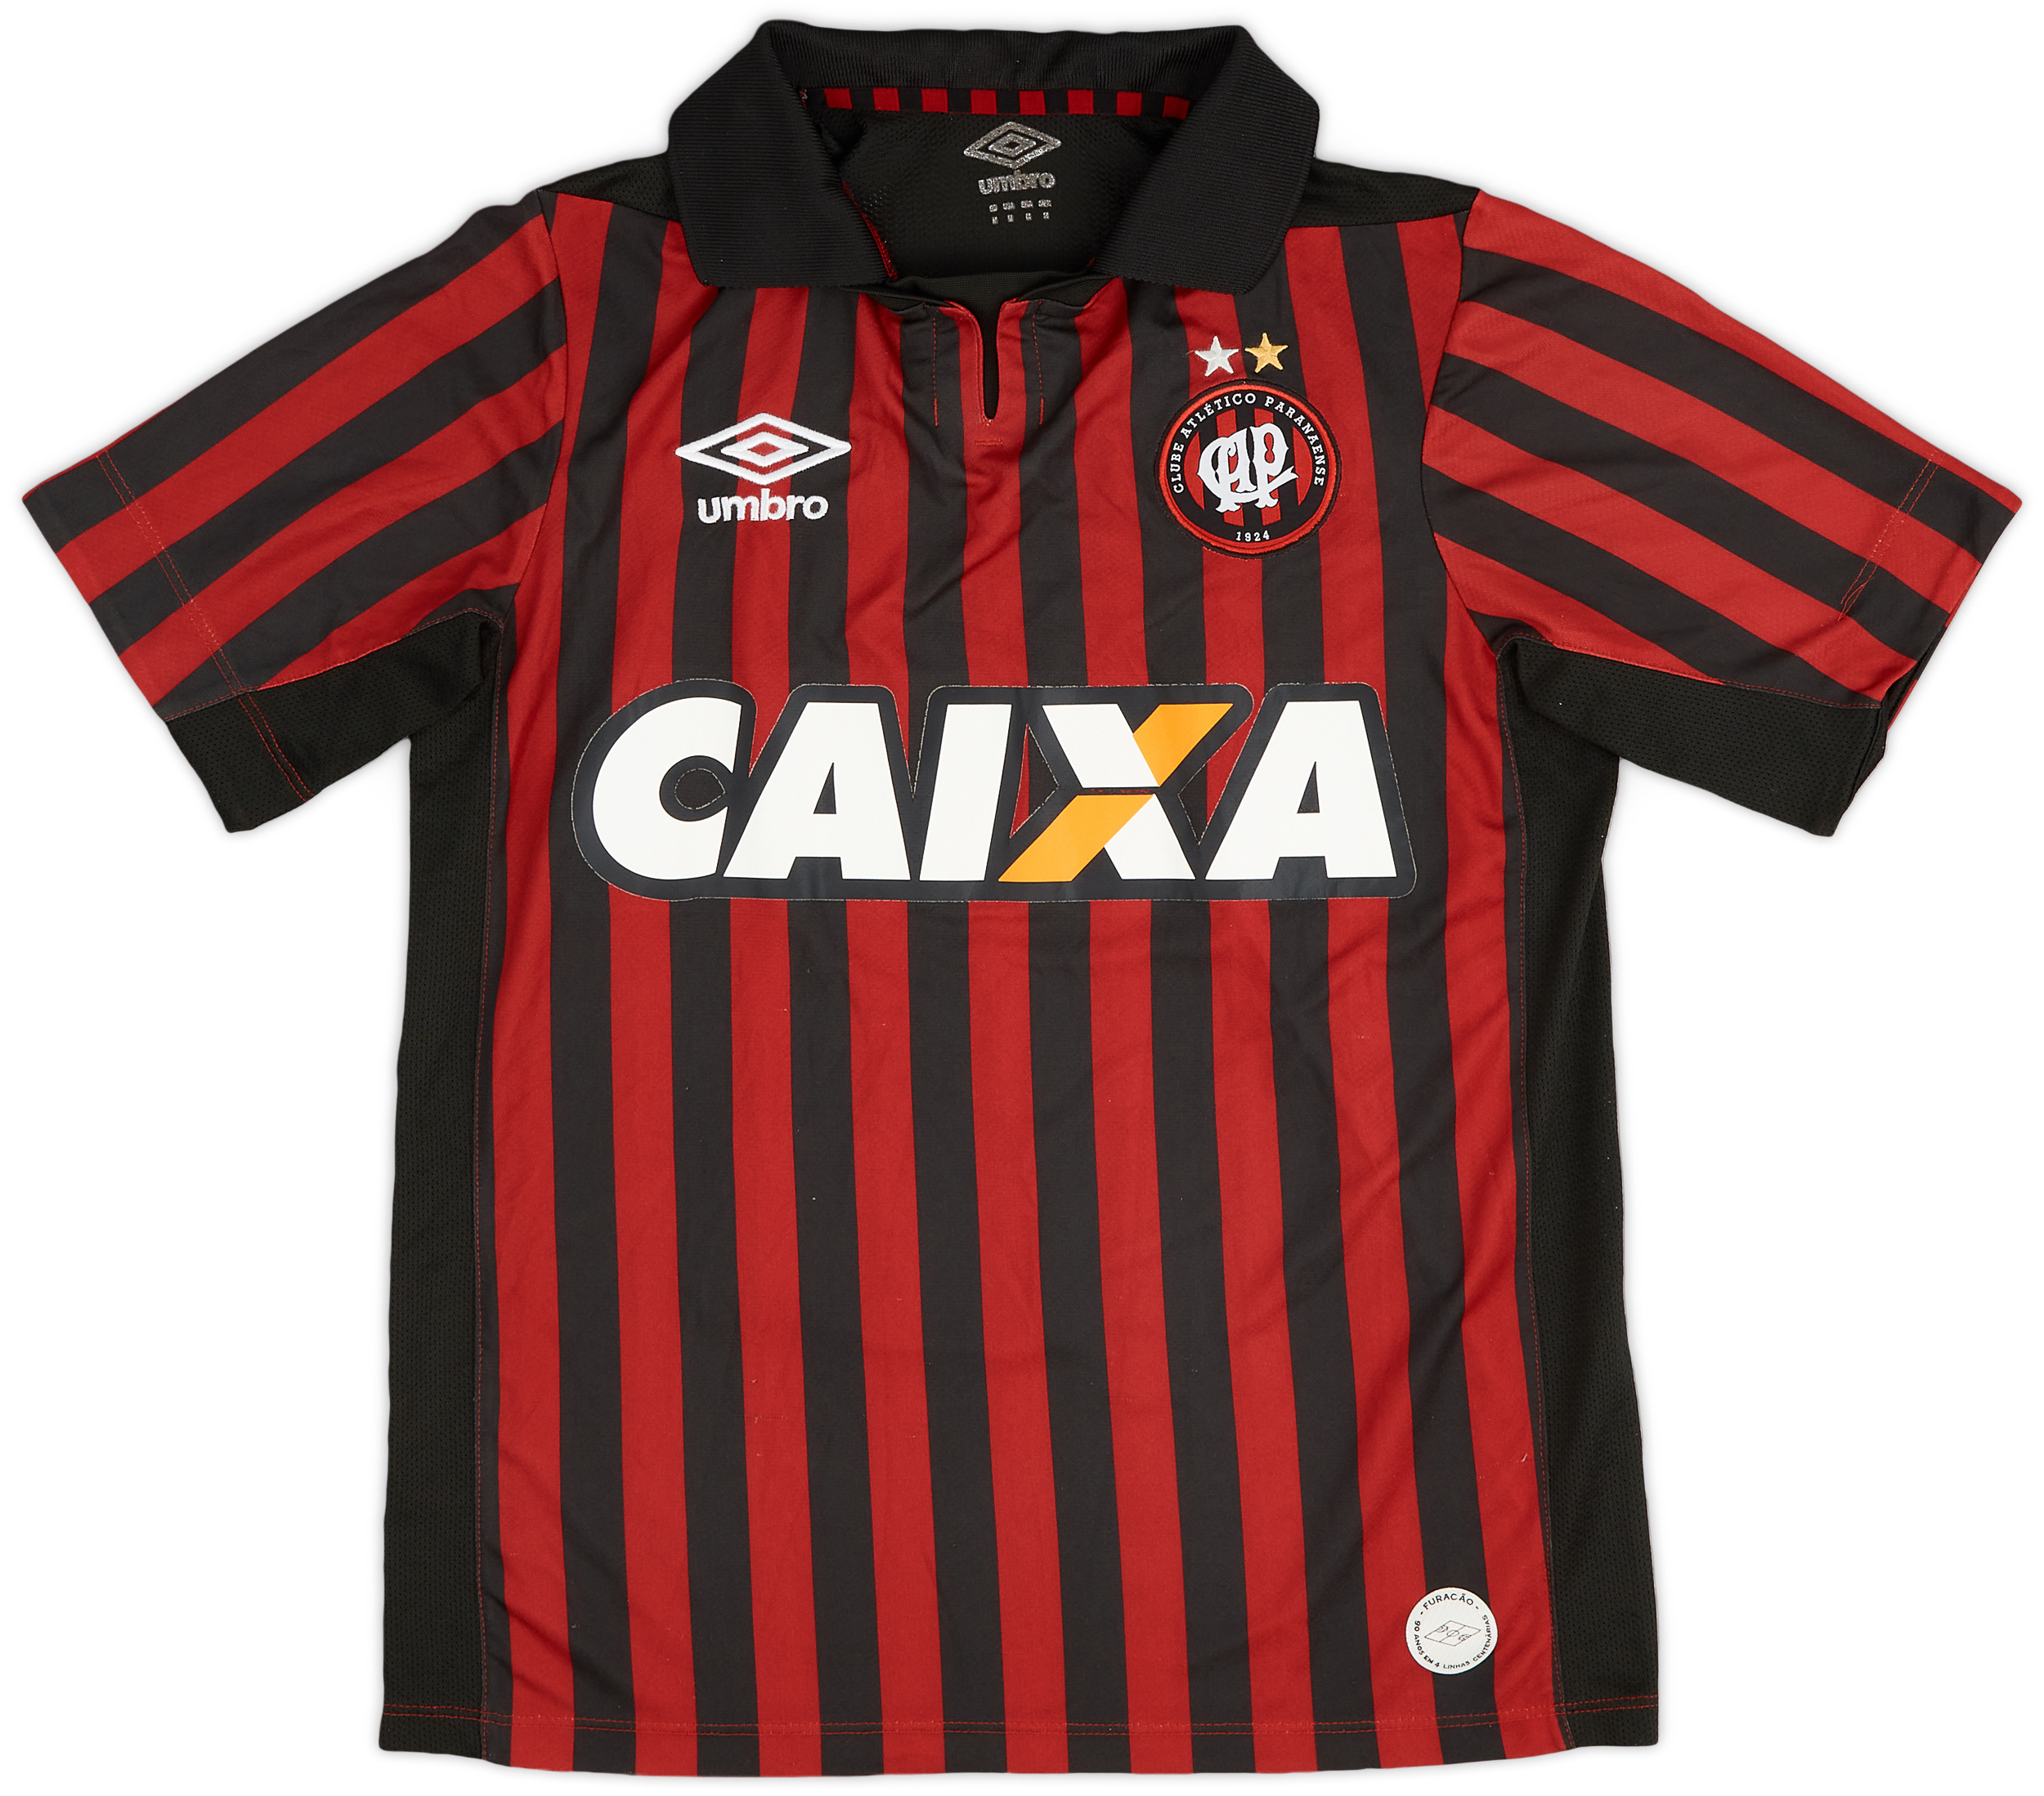 Athletico Paranaense Home camisa de futebol 2018. Sponsored by Caixa